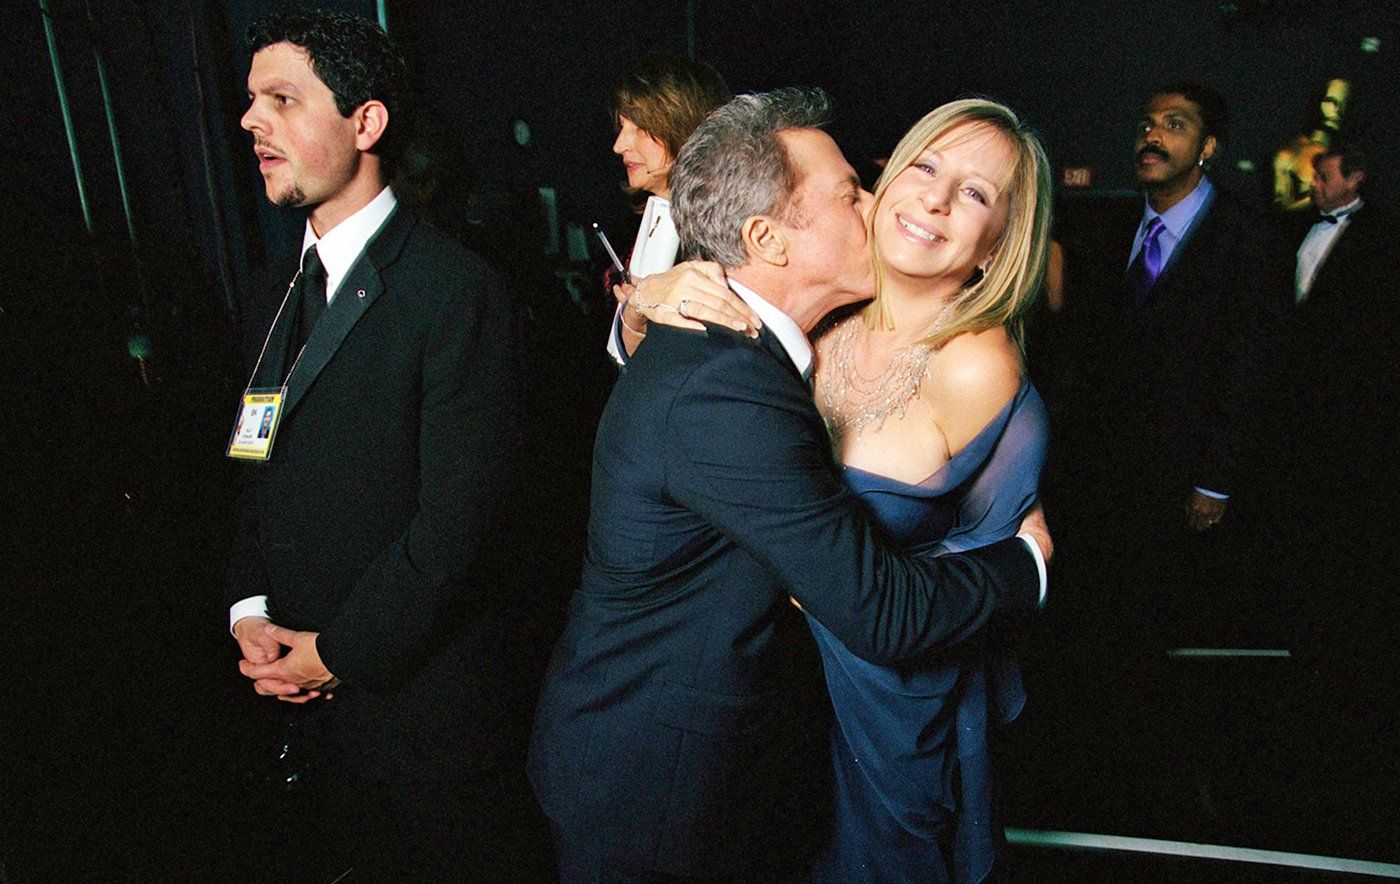 Dustin Hoffman and Barbra Streisand present an award at the 2005 Oscars.